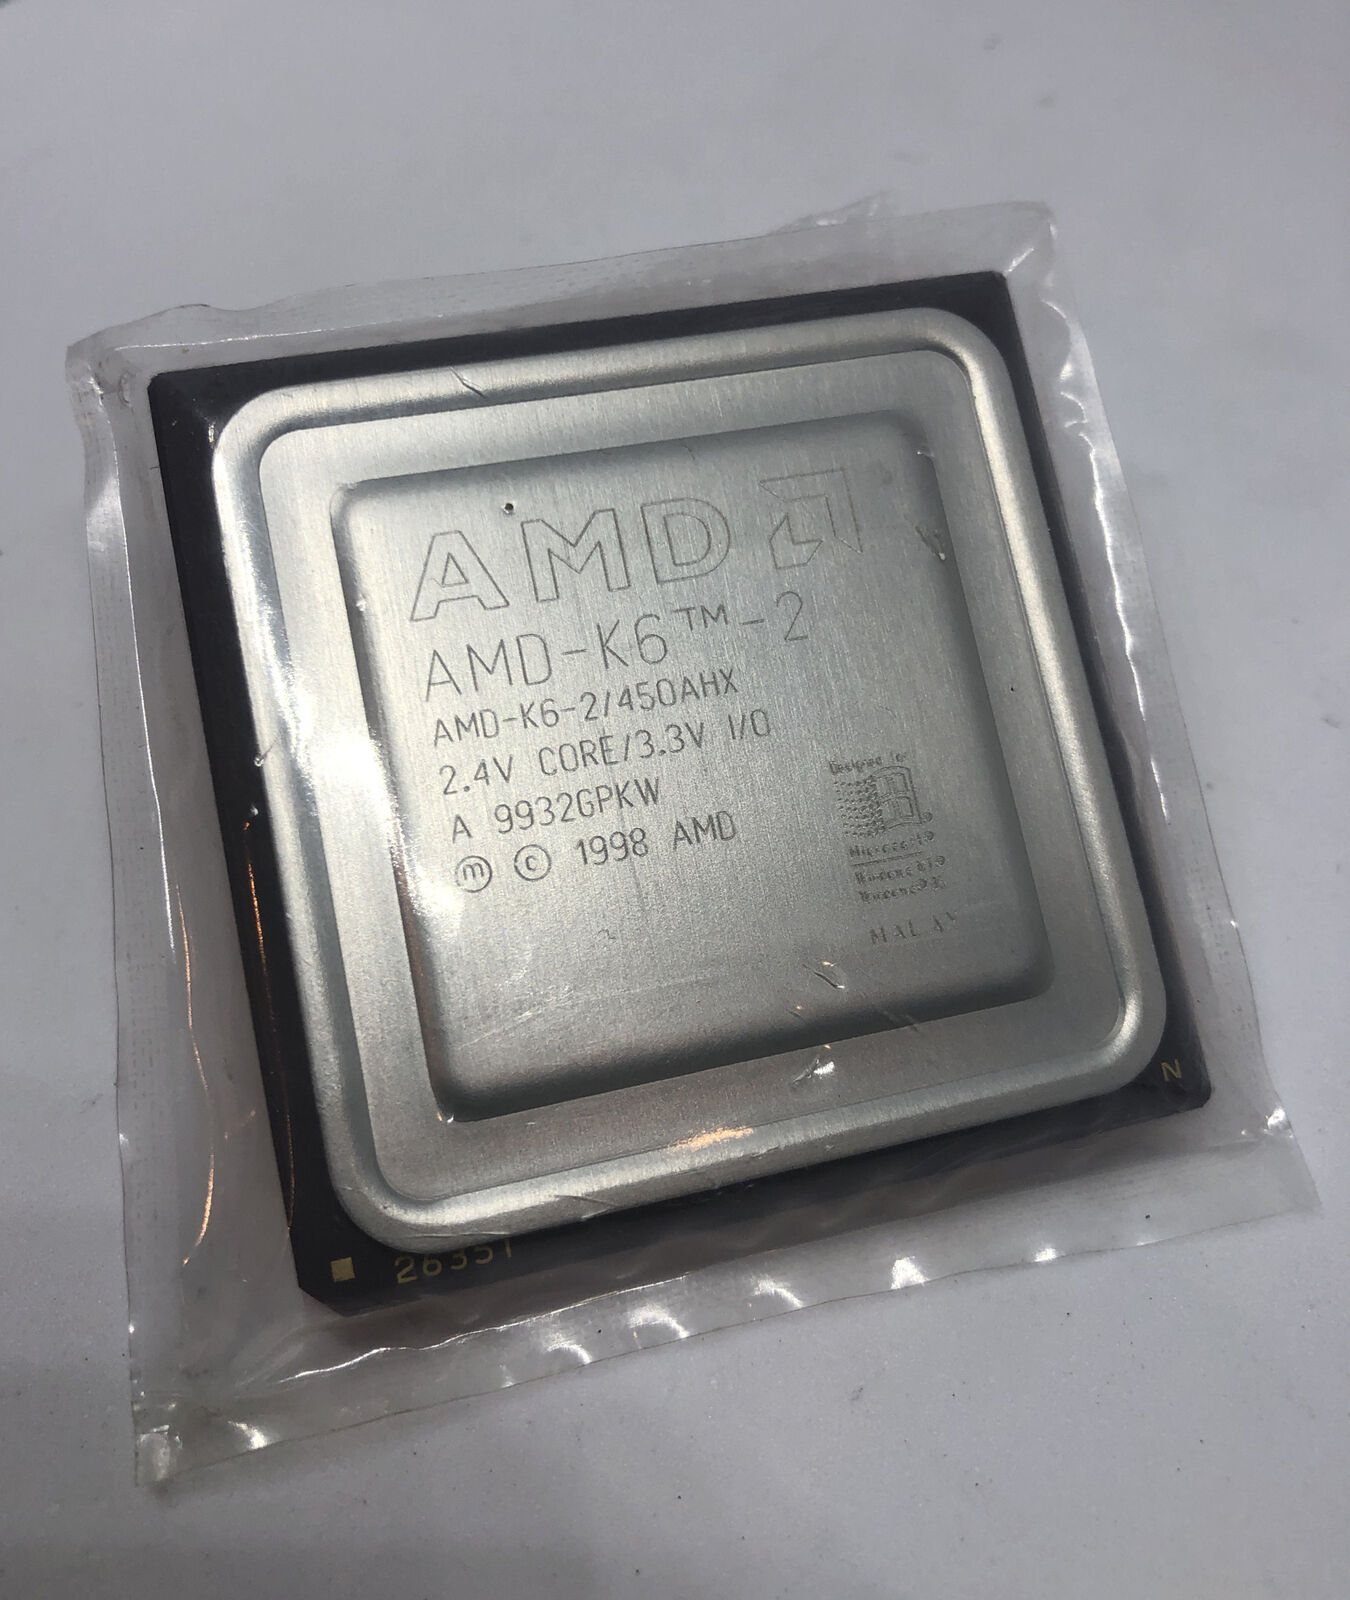 AMD AMD-K6-2 450AHX CPU Super Socket 7 2.4v core 3.3v K6-II Vintage CPU 450mhz